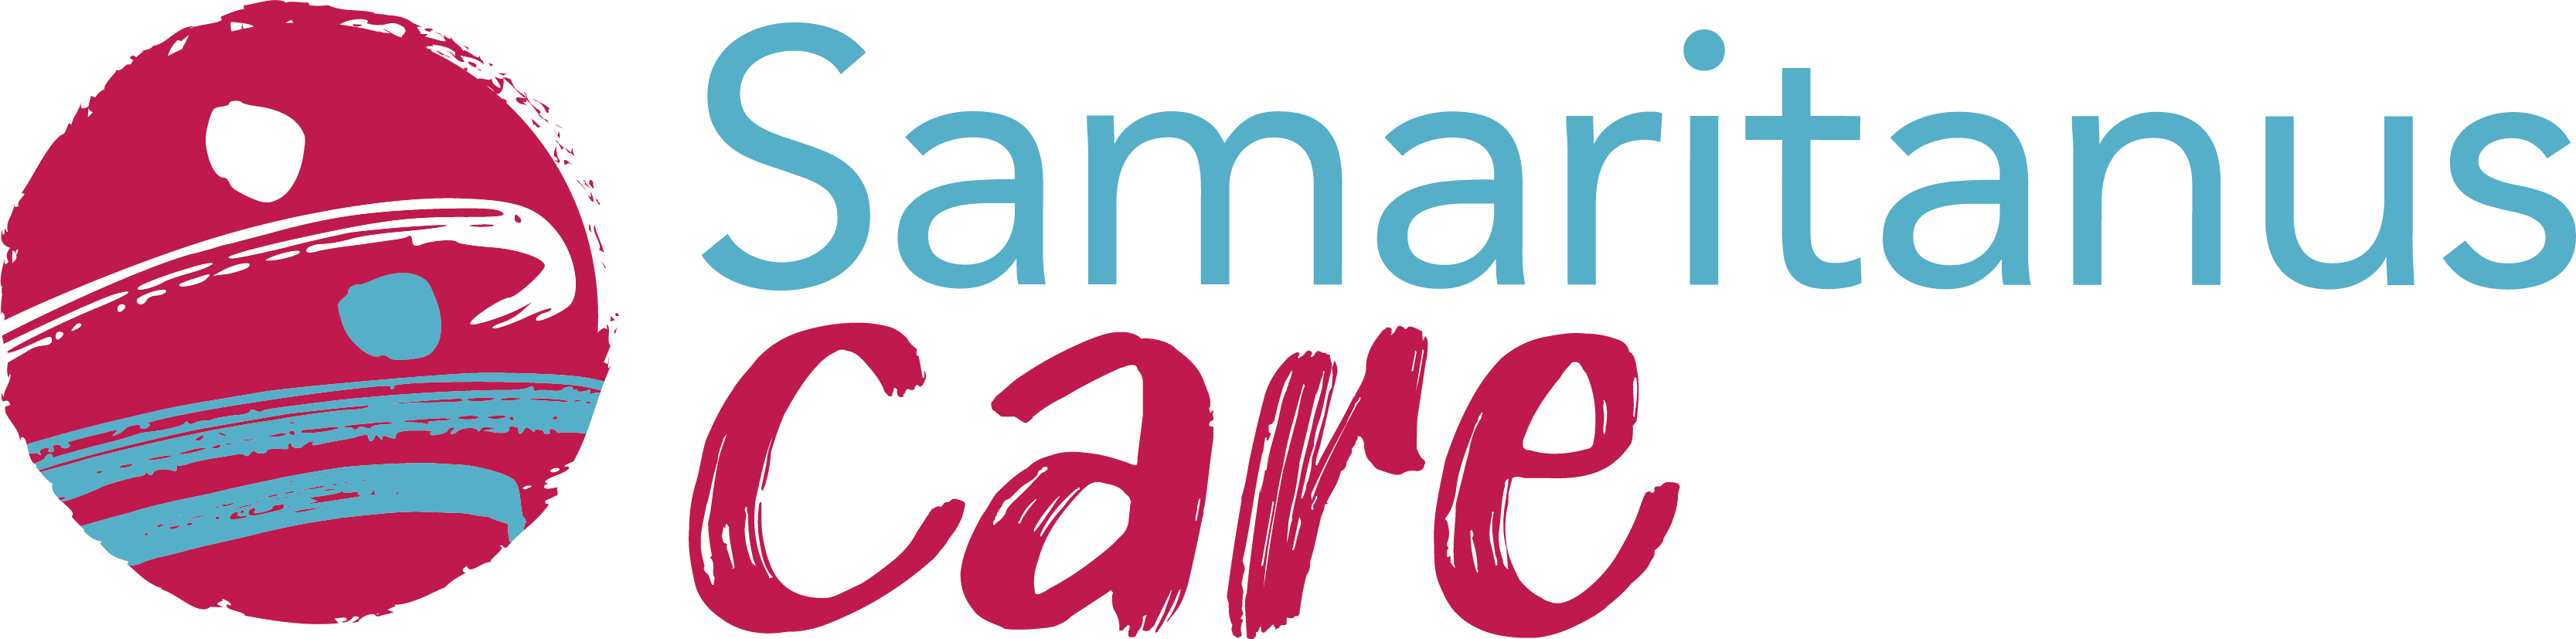 Samaritanus Care – Area riservata